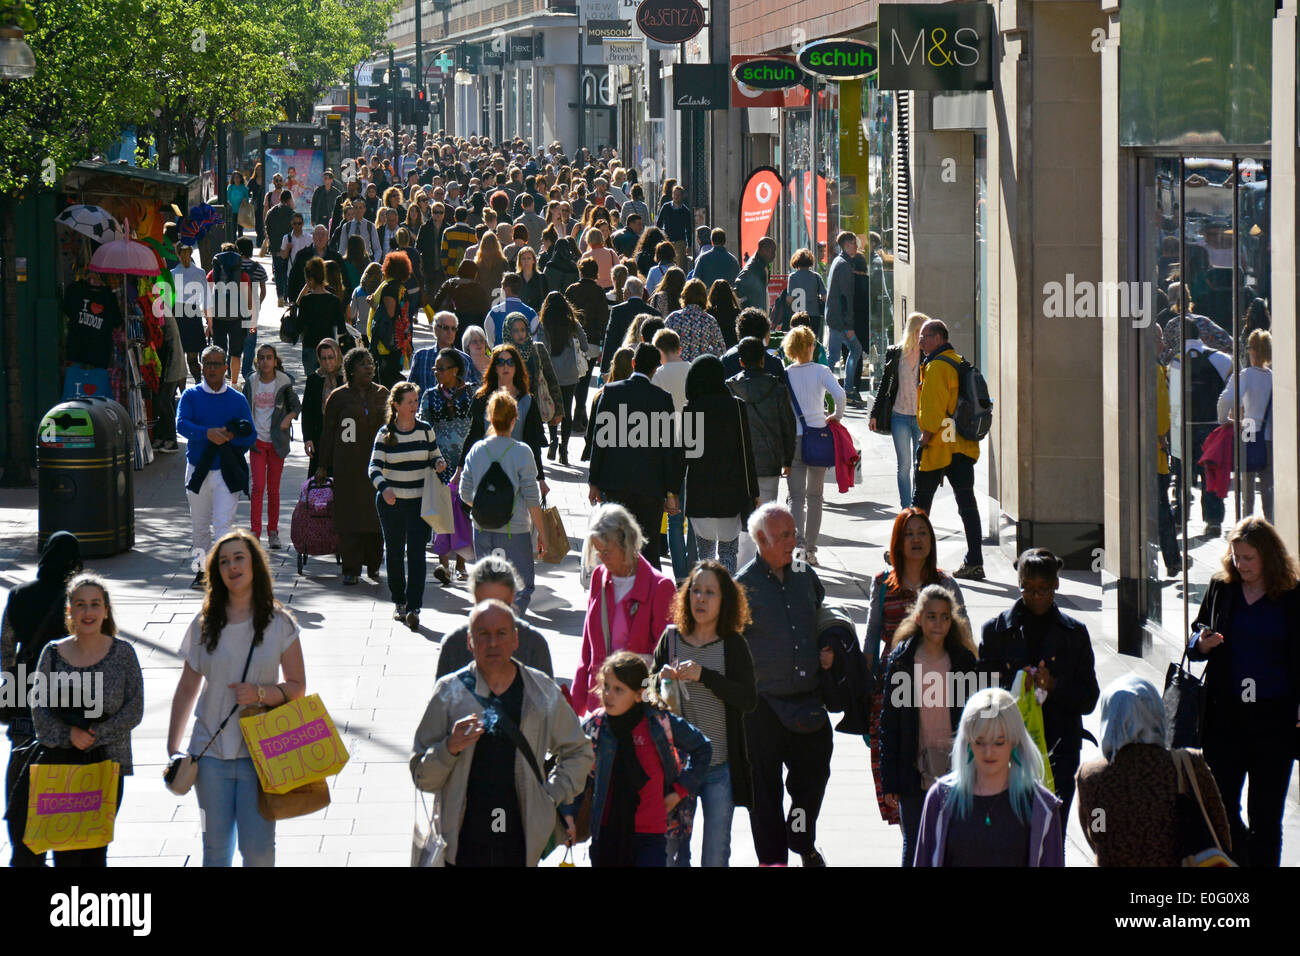 Vue aérienne foule de gens qui font du shopping le long de la rue animée d'Oxford Street avec le célèbre magasin de marque et des panneaux West End Londres Angleterre Royaume-Uni Banque D'Images